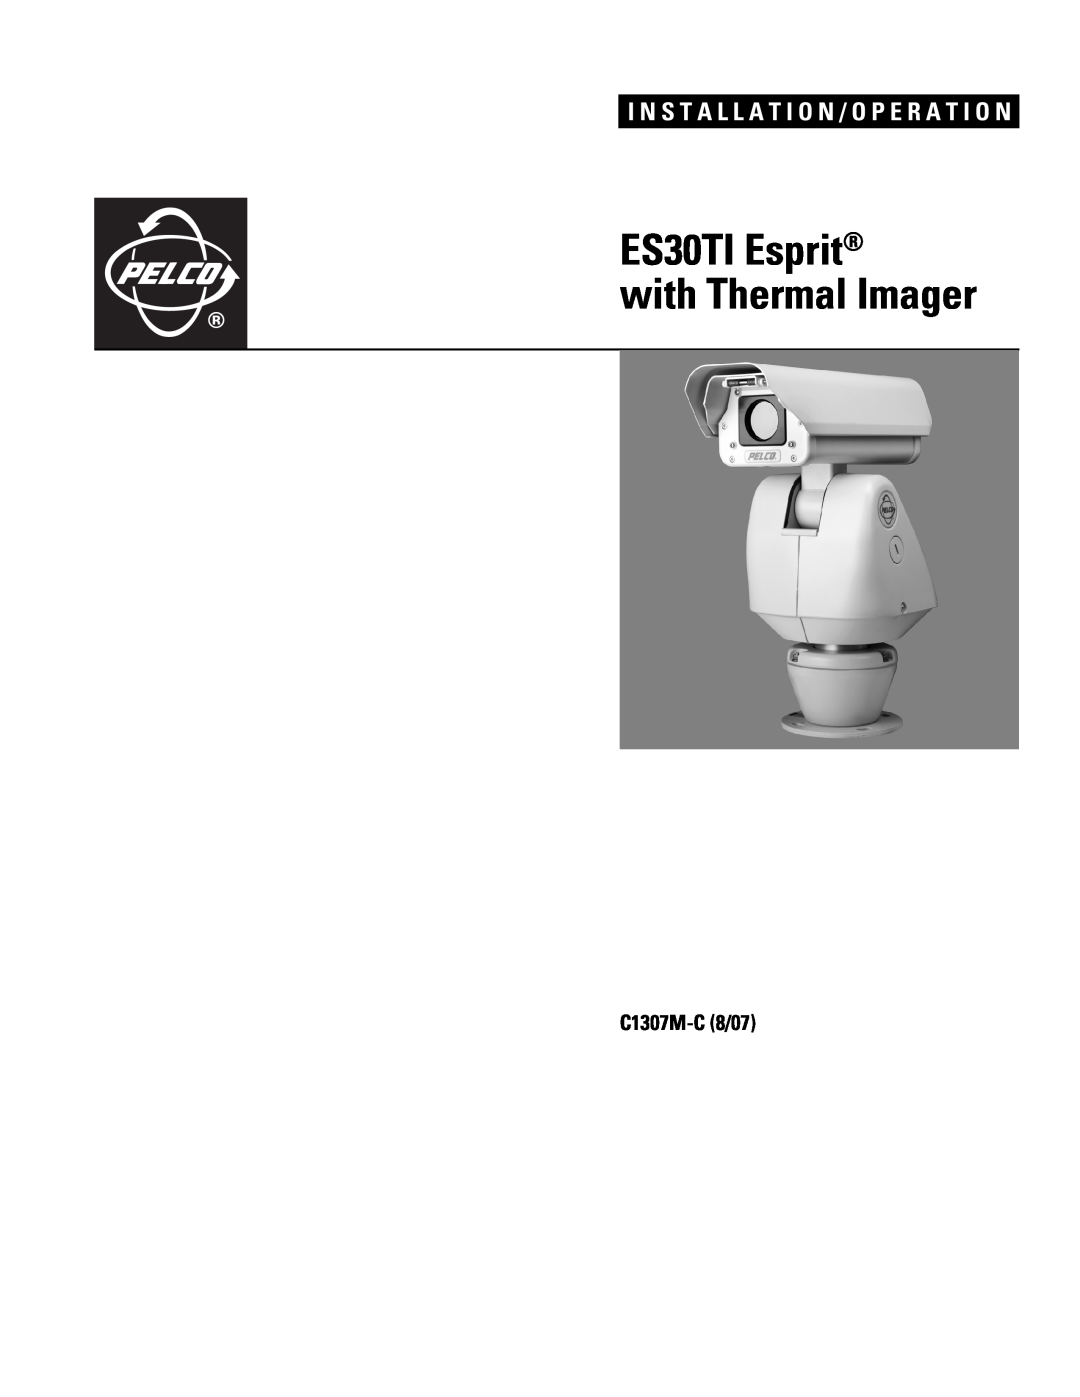 Pelco manual C1307M-C8/07, ES30TI Esprit with Thermal Imager, I N S T A L L A T I O N / O P E R A T I O N 